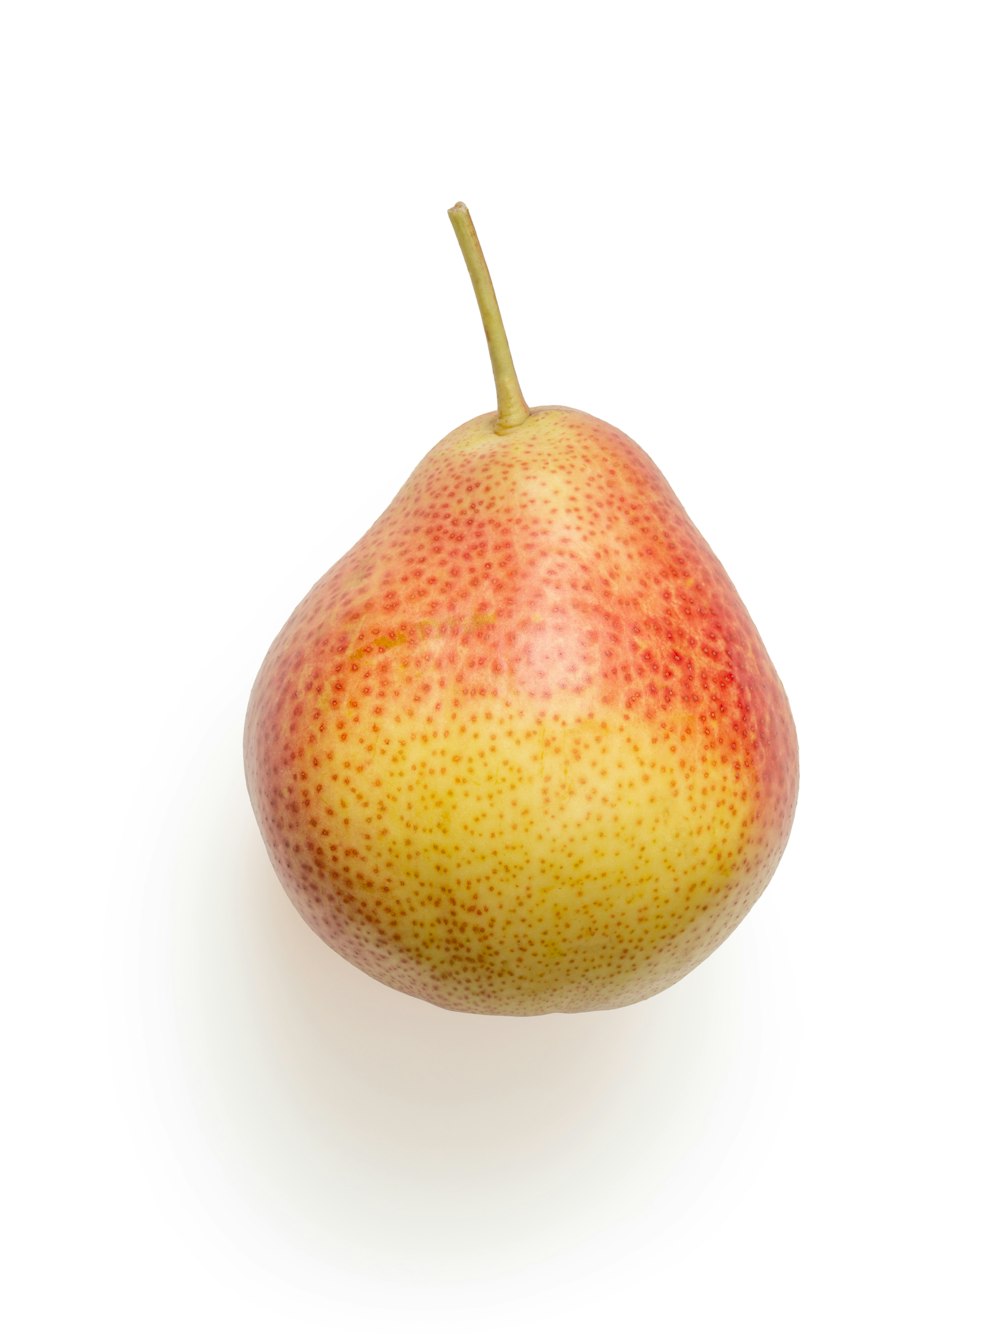 노란색과 빨간색 둥근 과일